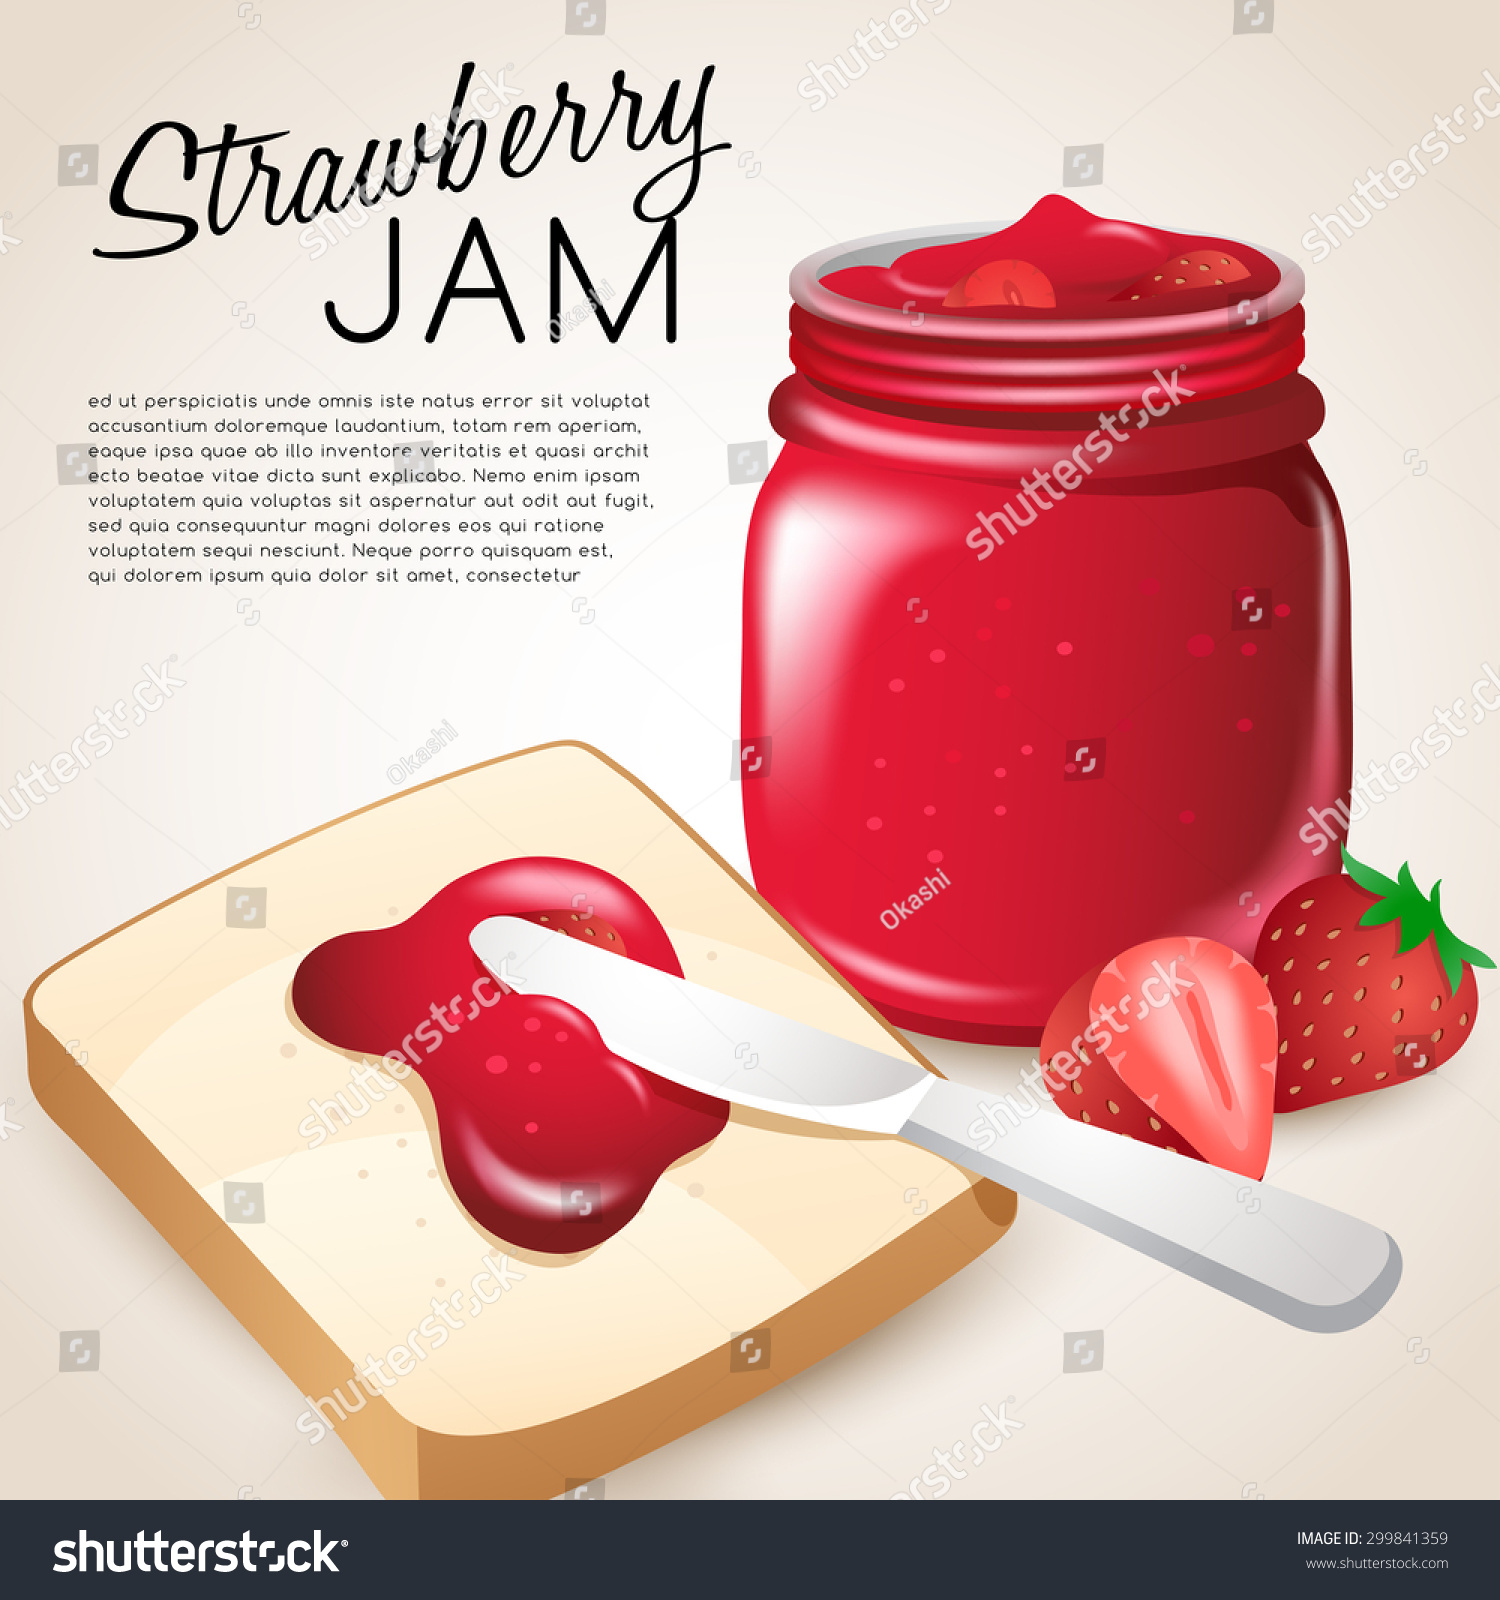 Strawberry Jam : Vector Illustration - 299841359 : Shutterstock